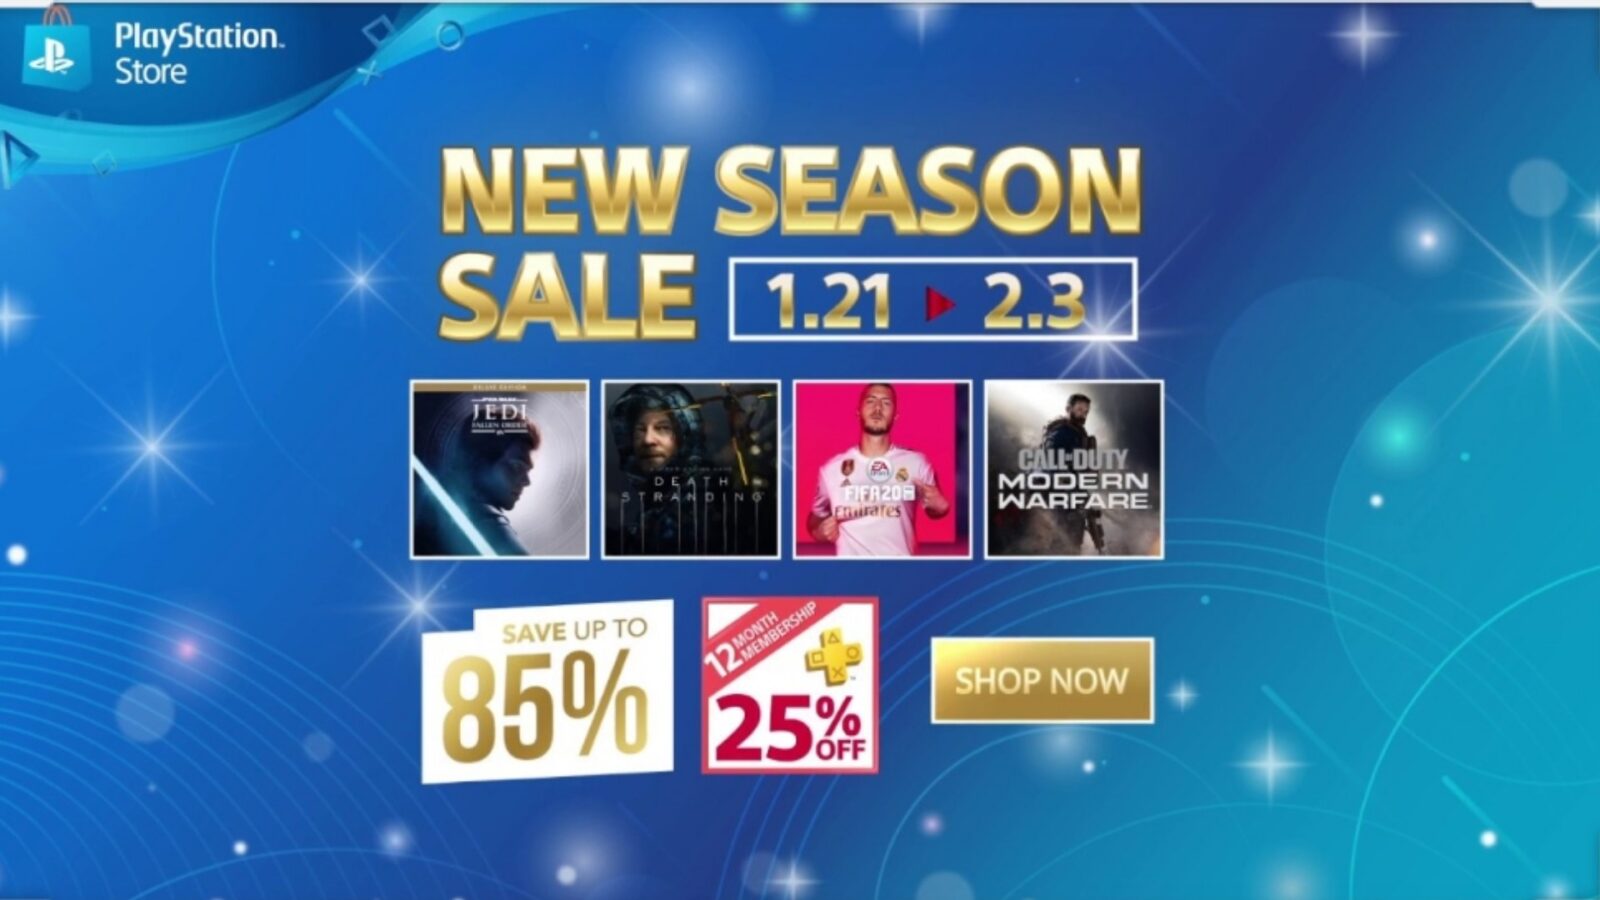 Siapkan Dompetmu Untuk Berbelanja di New Season Sale PlayStation Store